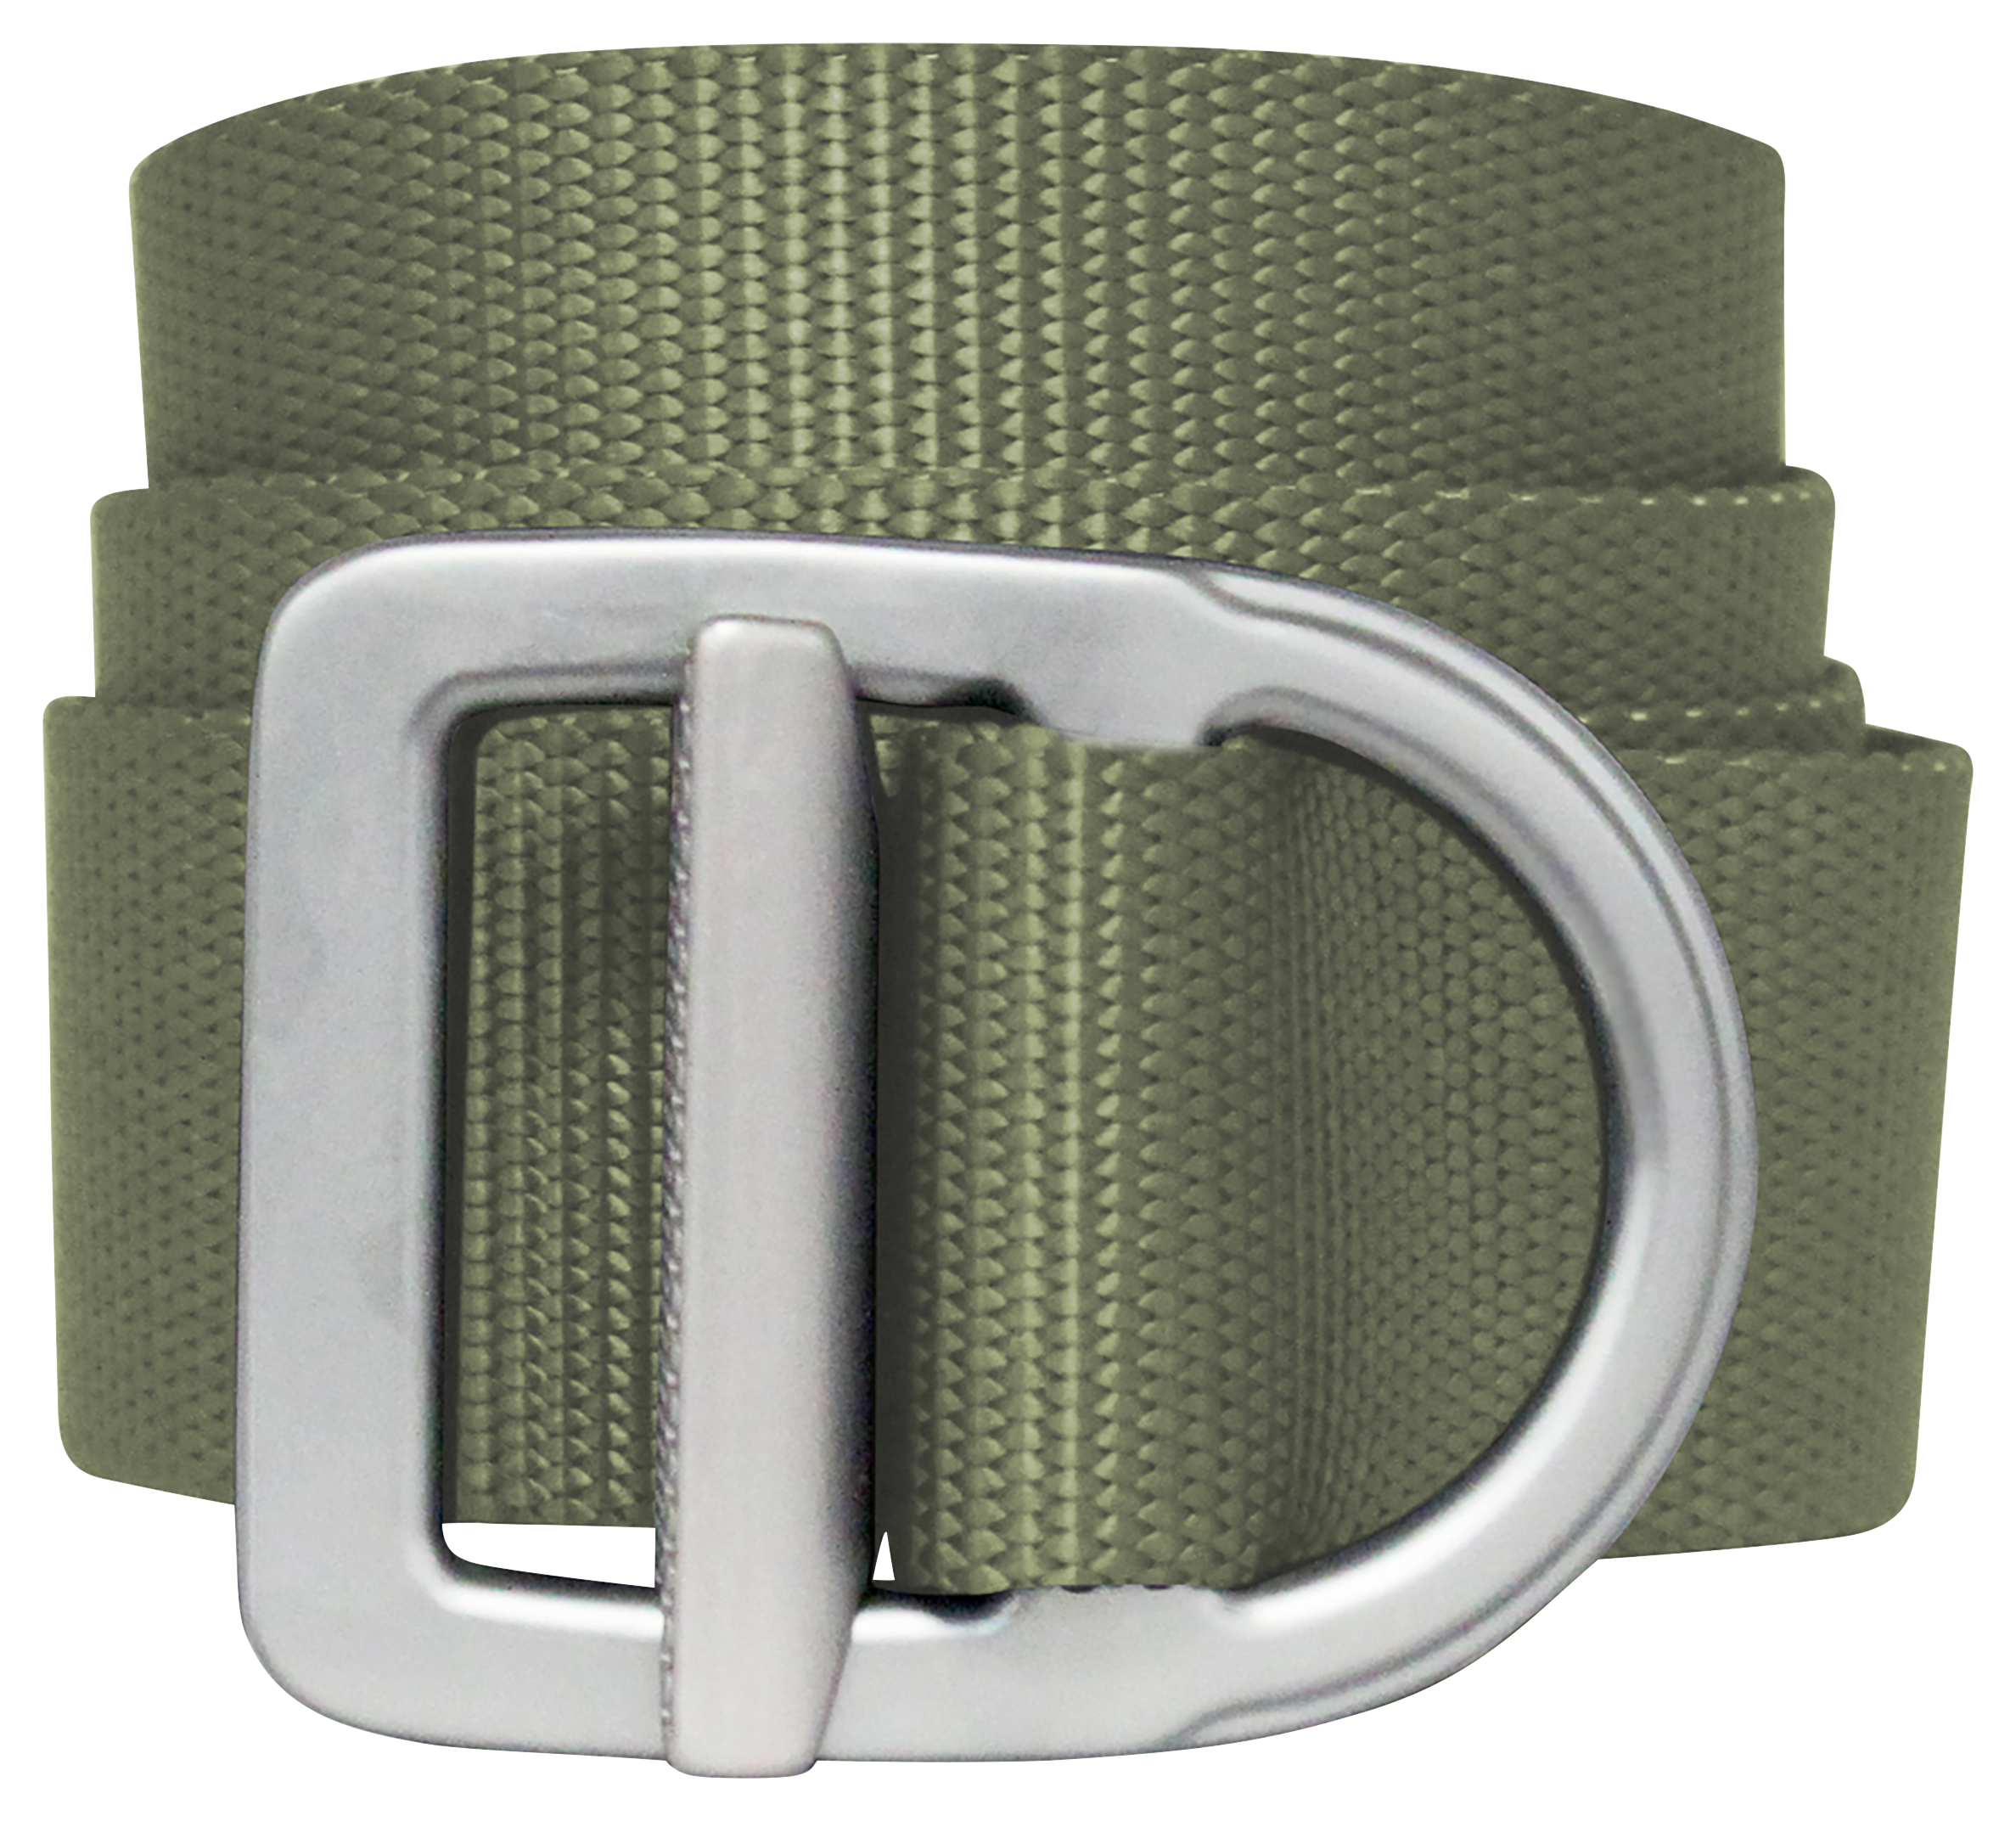 Bison Designs Last Chance Delta Light-Duty Belt for Men - Olive/Silver - 2XL